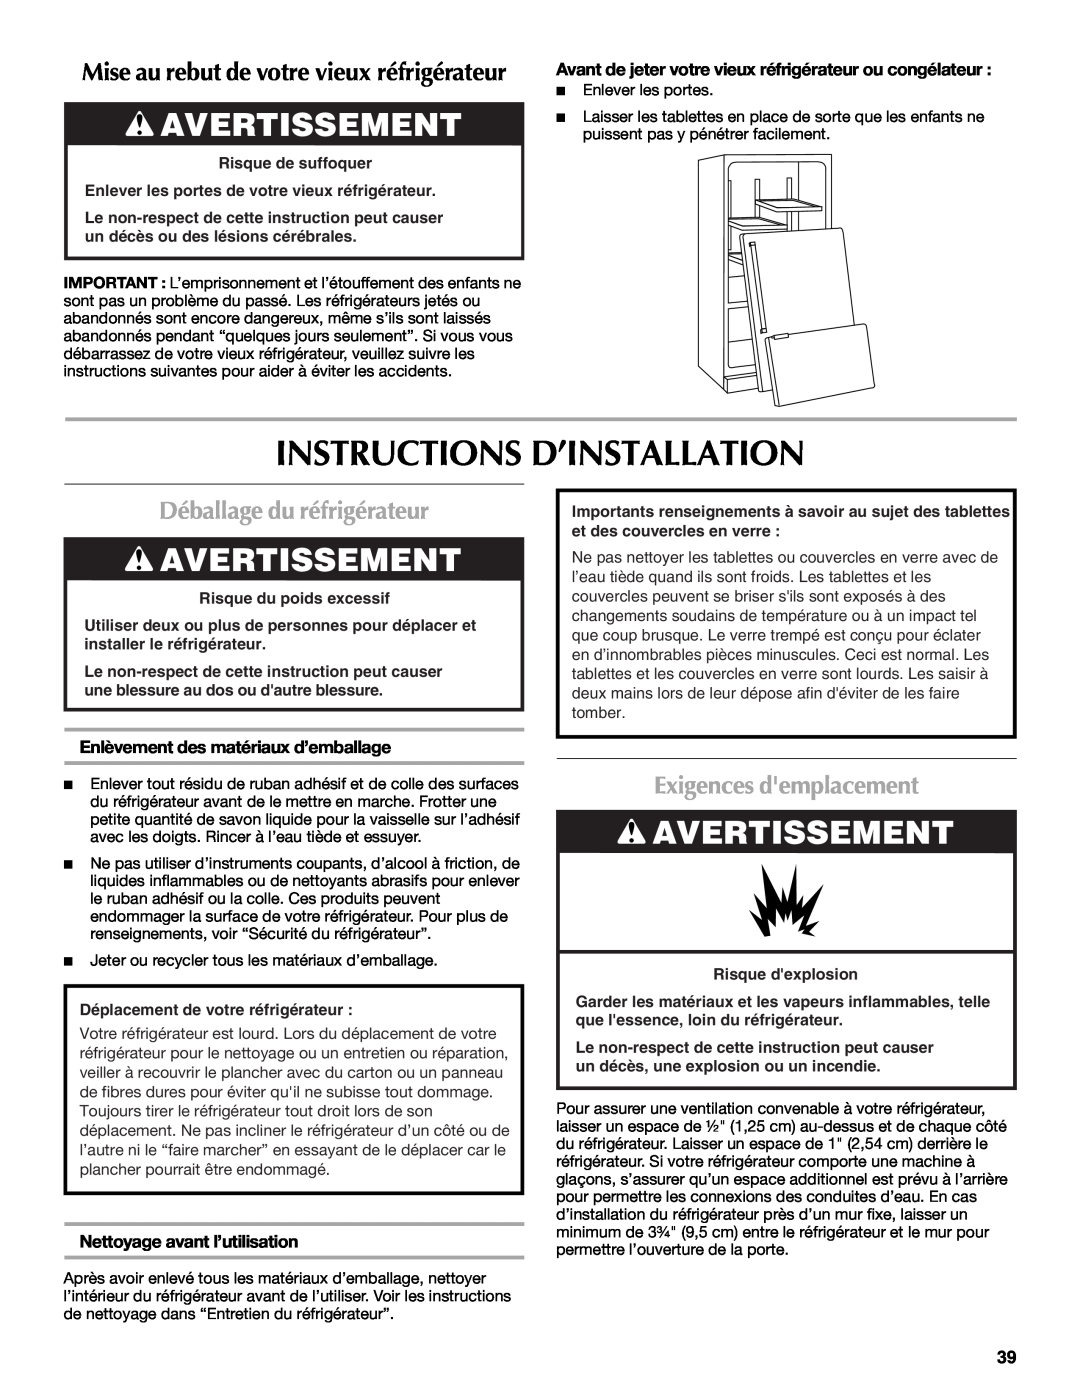 Maytag MFI2269VEM Instructions D’Installation, Avertissement, Déballage du réfrigérateur, Exigences demplacement 